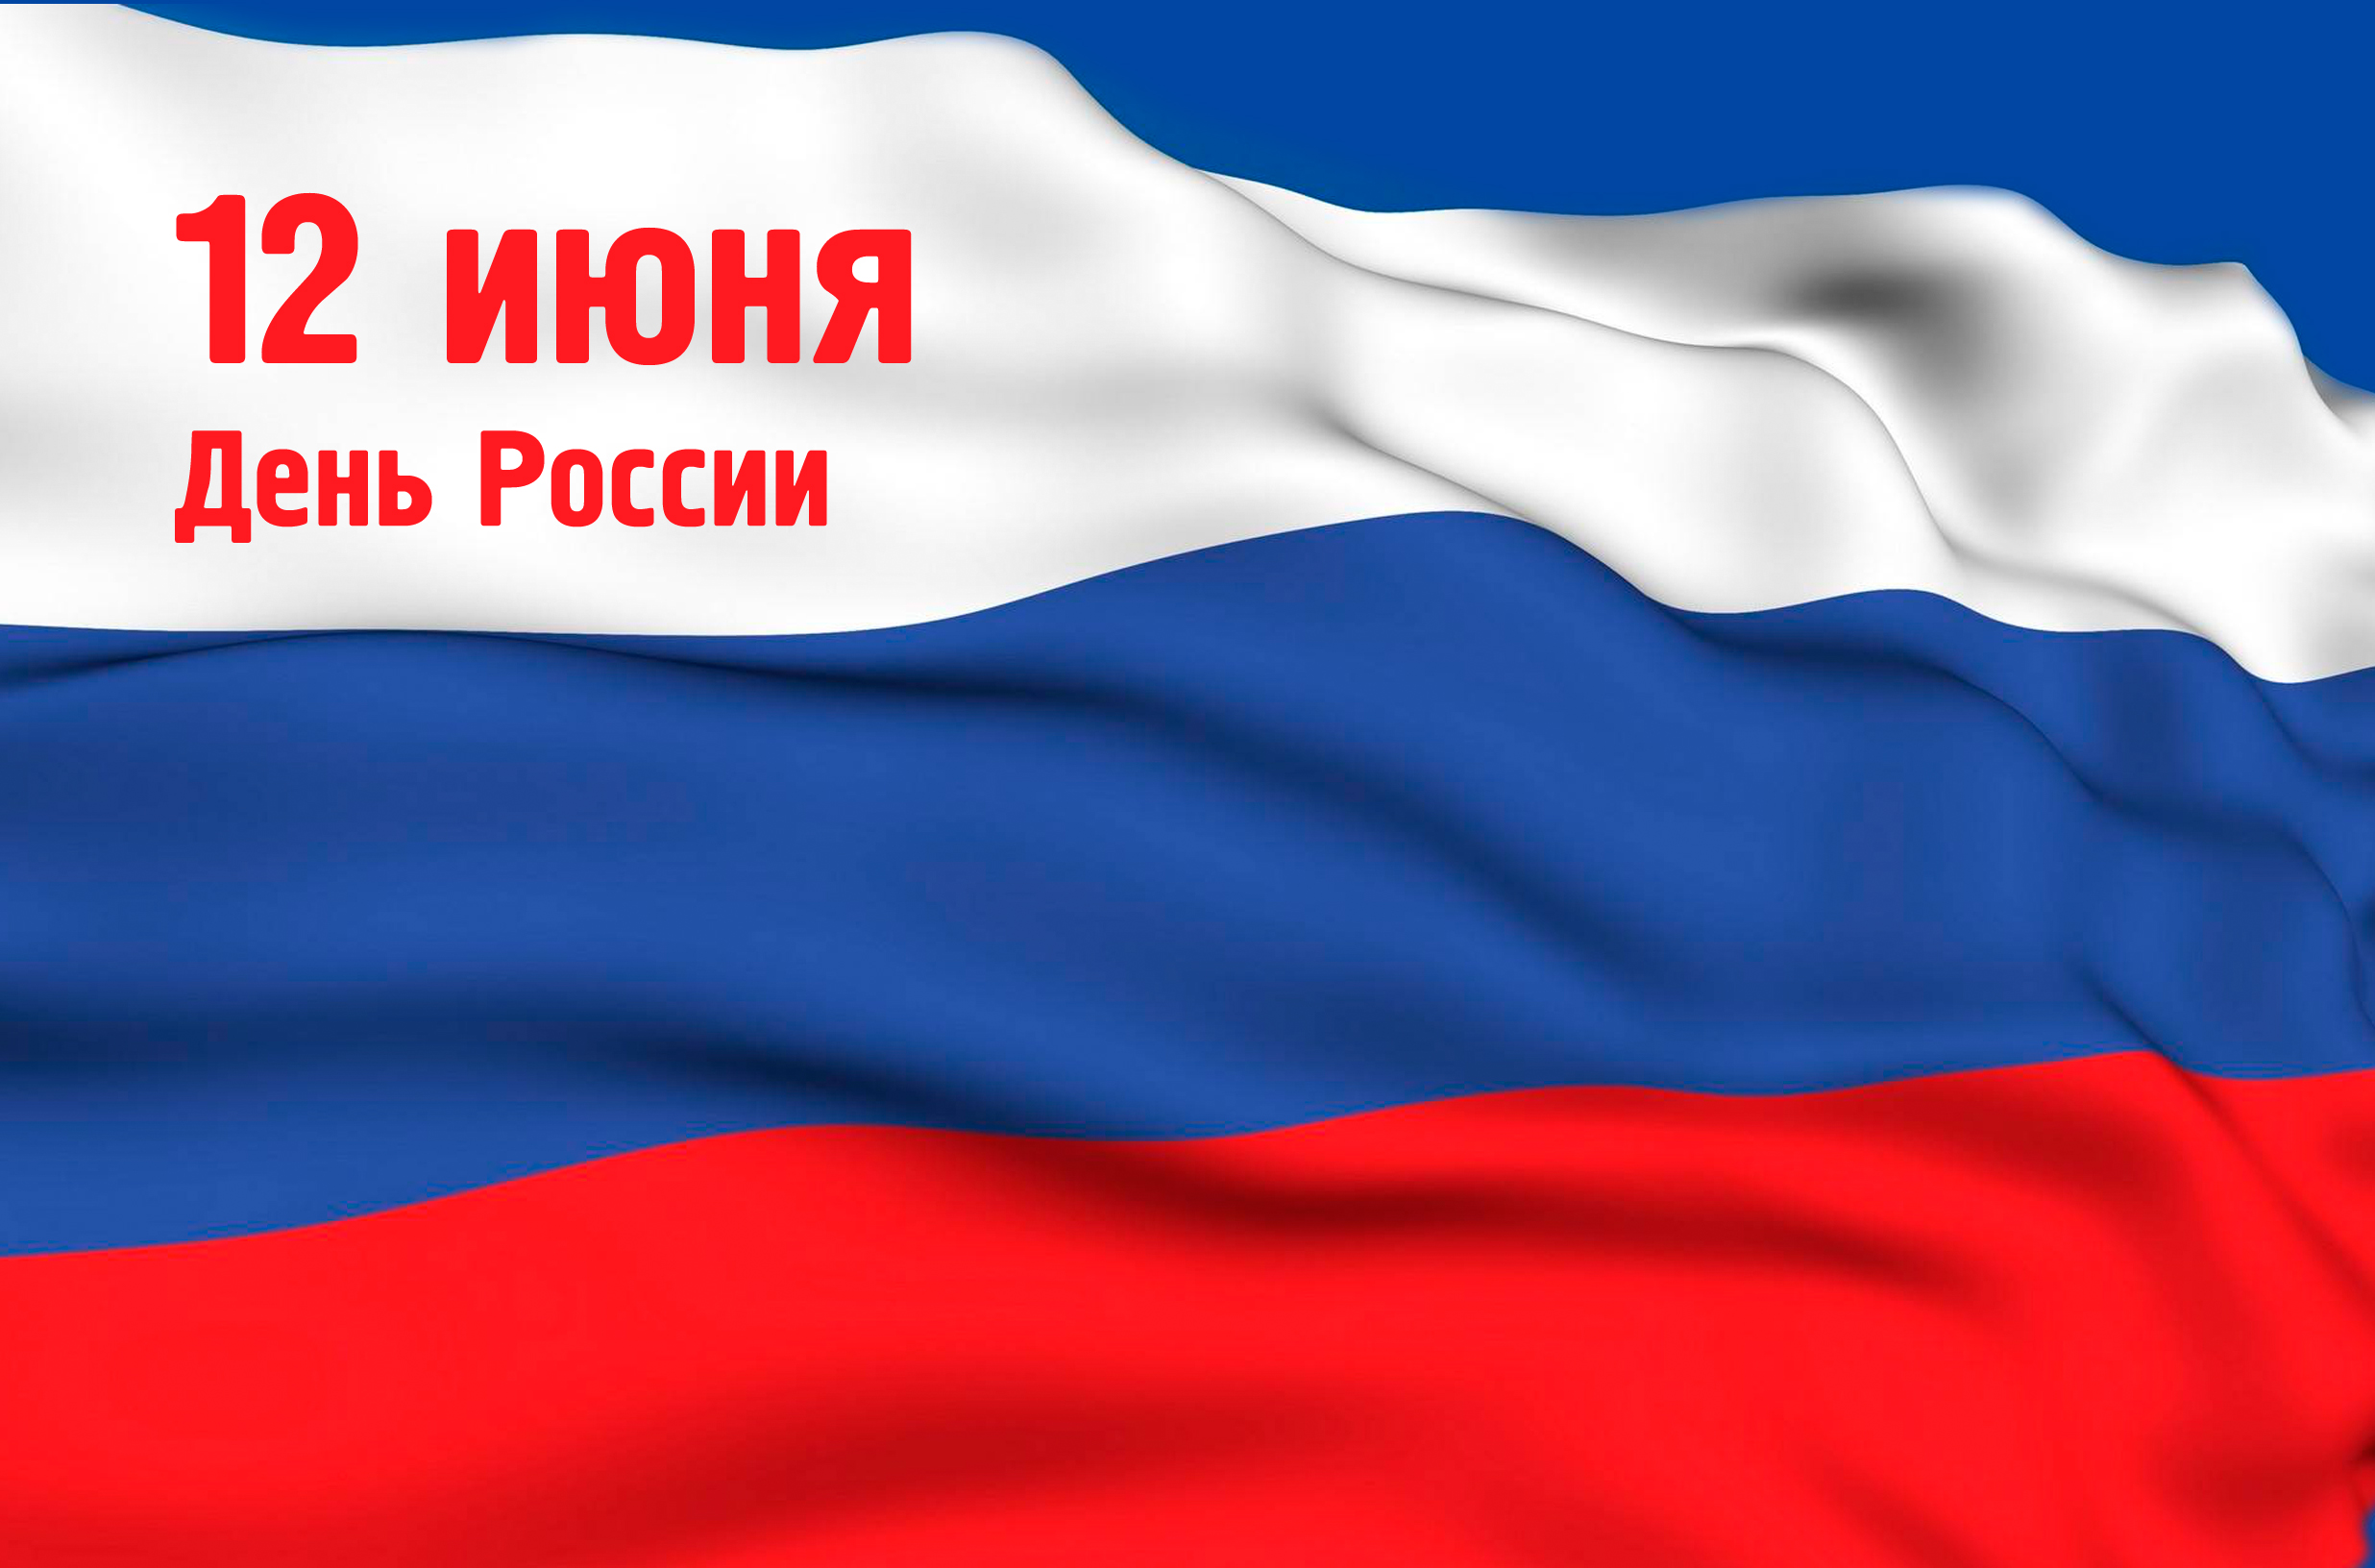 12 июня, во Владивостоке отметят государственный праздник День России